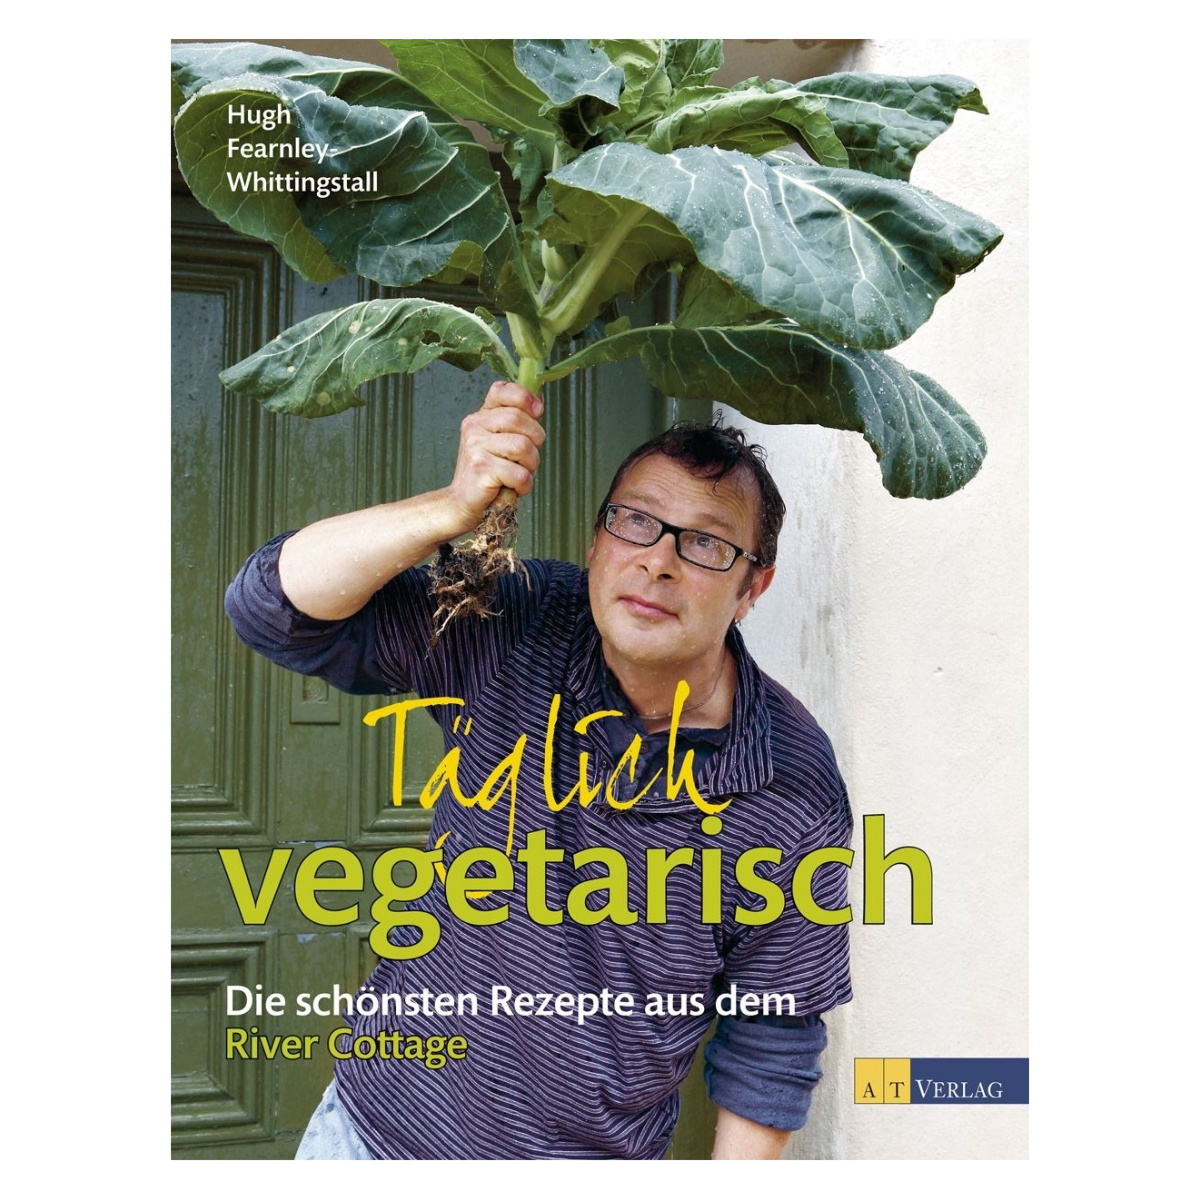 Täglich vegetarisch Die schönsten Rezepte aus de River Cottage PDF
Epub-Ebook